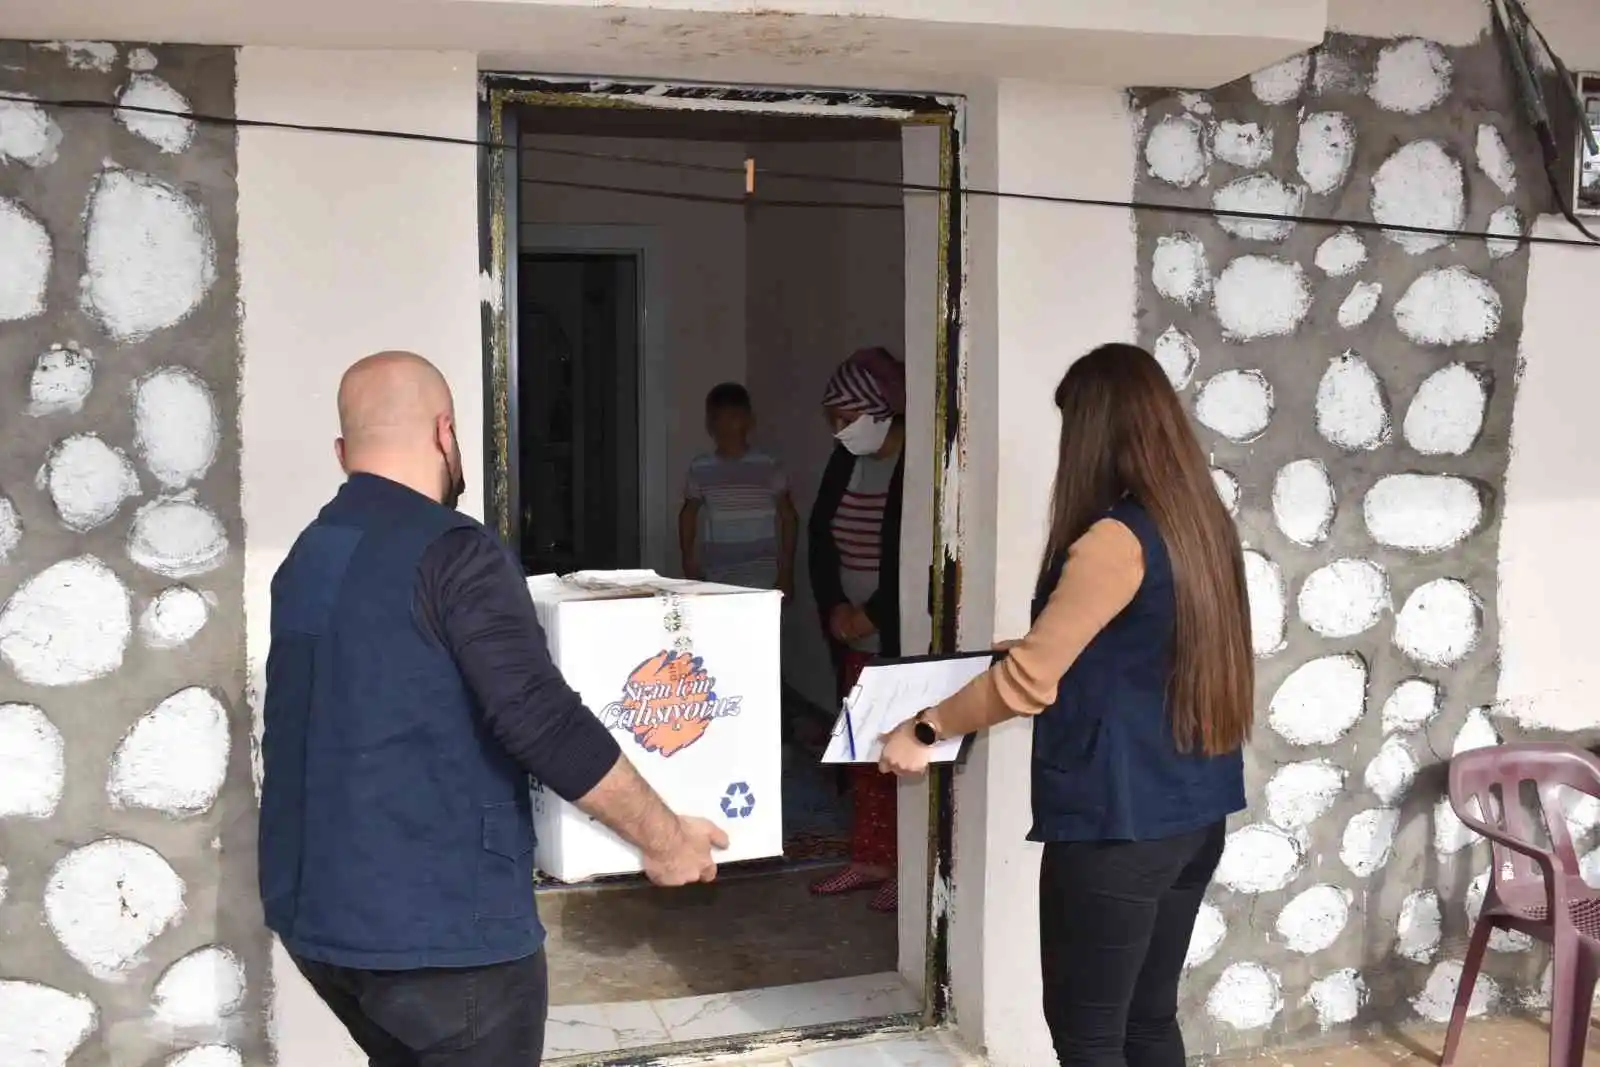 Mardin Büyükşehir Belediyesinden 15 milyon 42 bin lira eğitim desteği verildi
, MARDİN haberleri